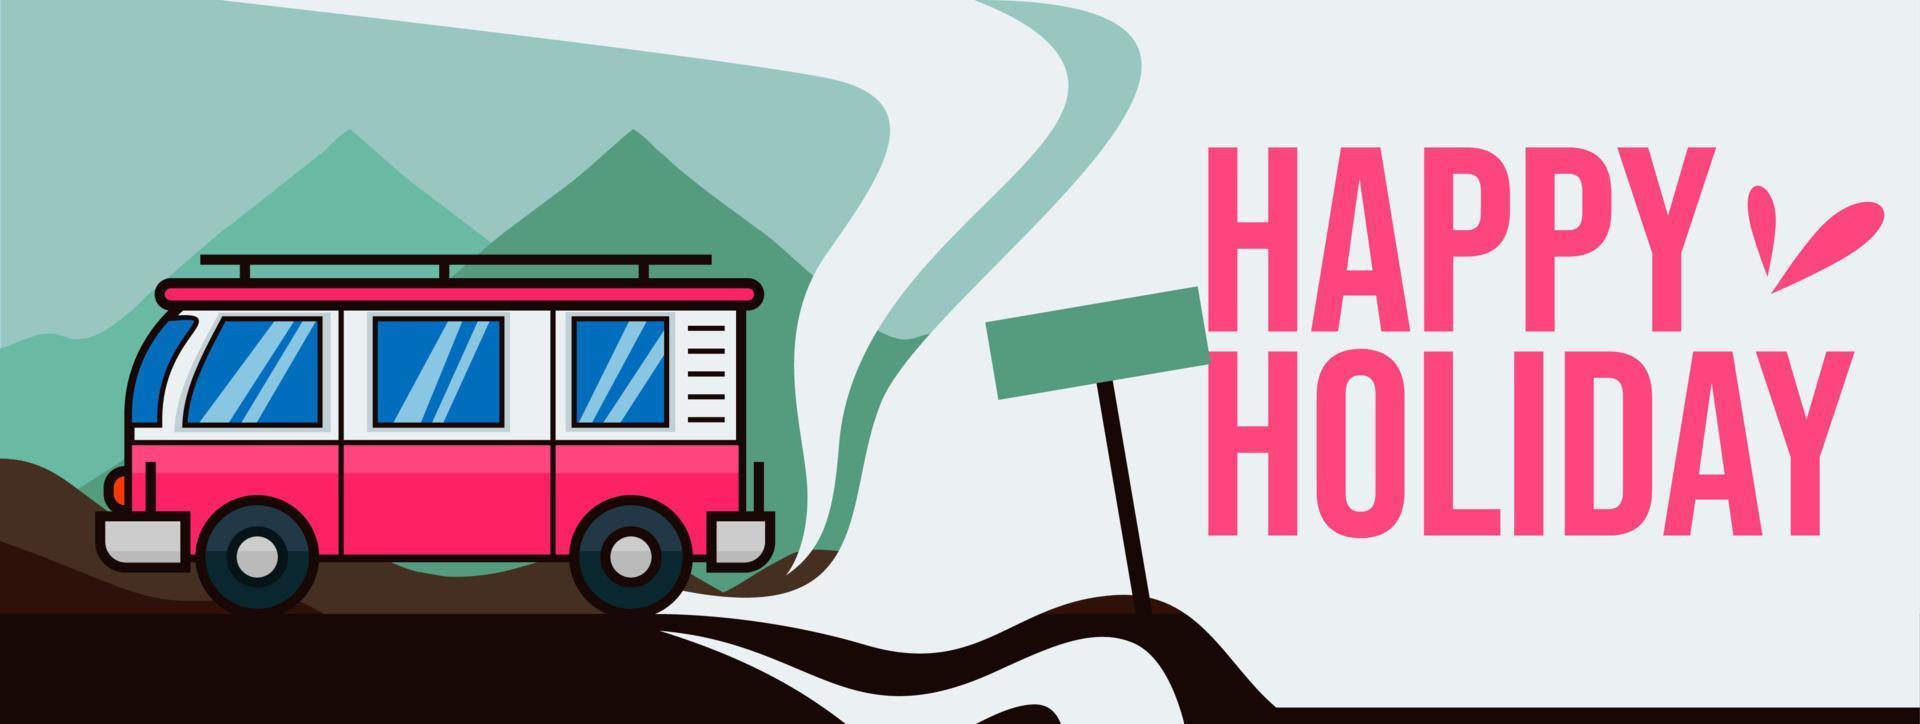 vetor de banner de feliz feriado com ilustração de van